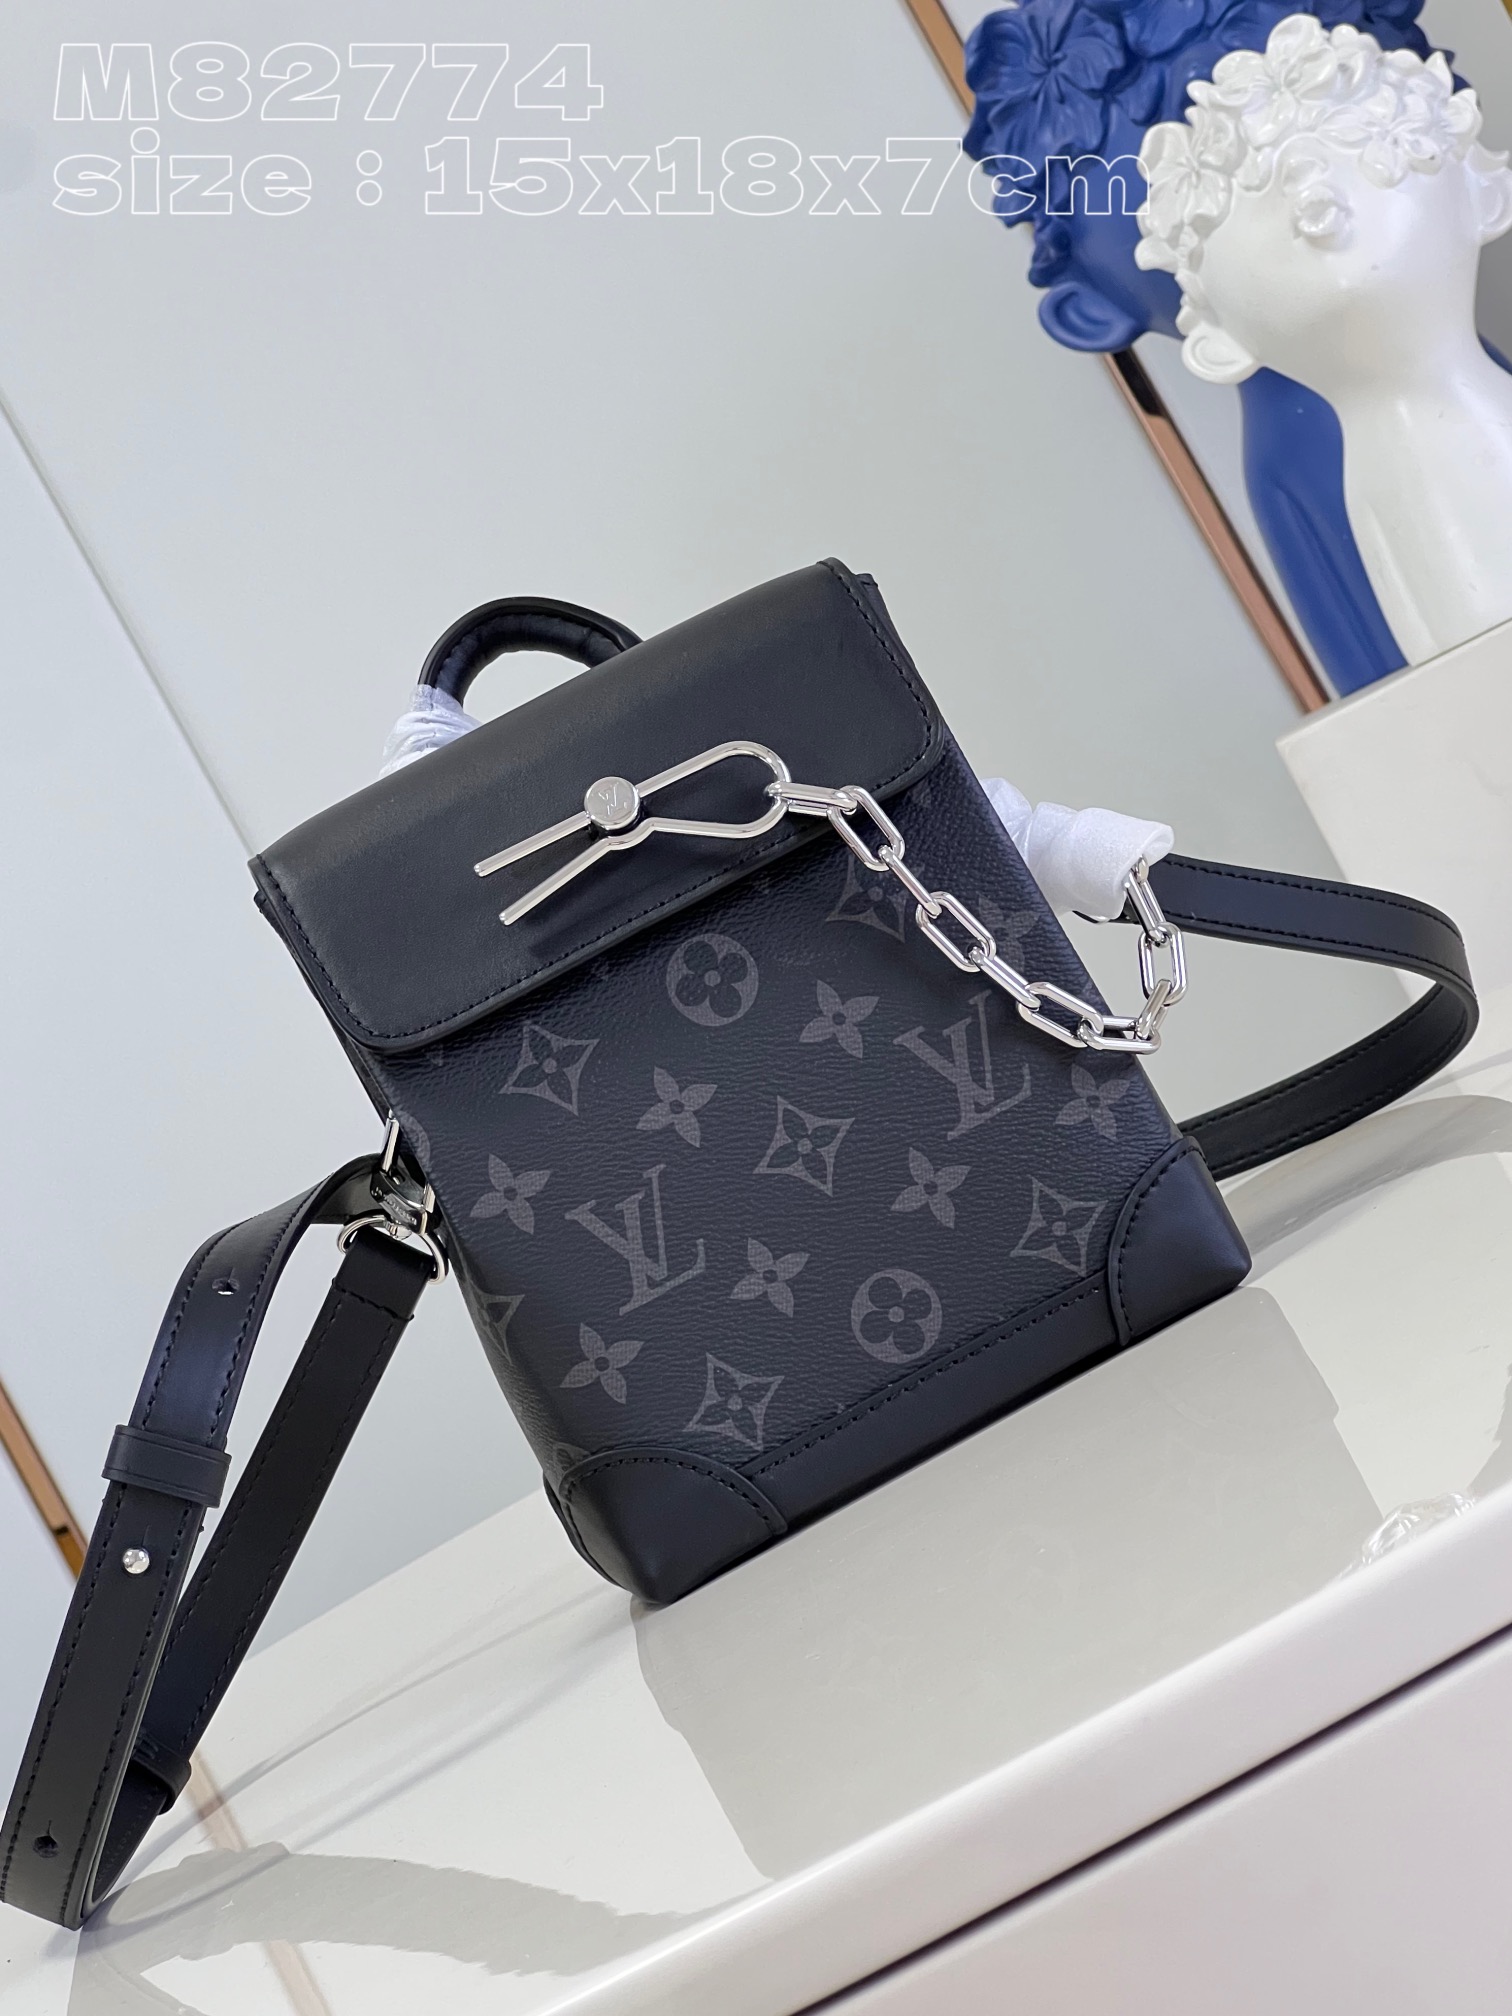 Louis Vuitton Fake
 Bags Handbags Black Monogram Canvas Chains M82774